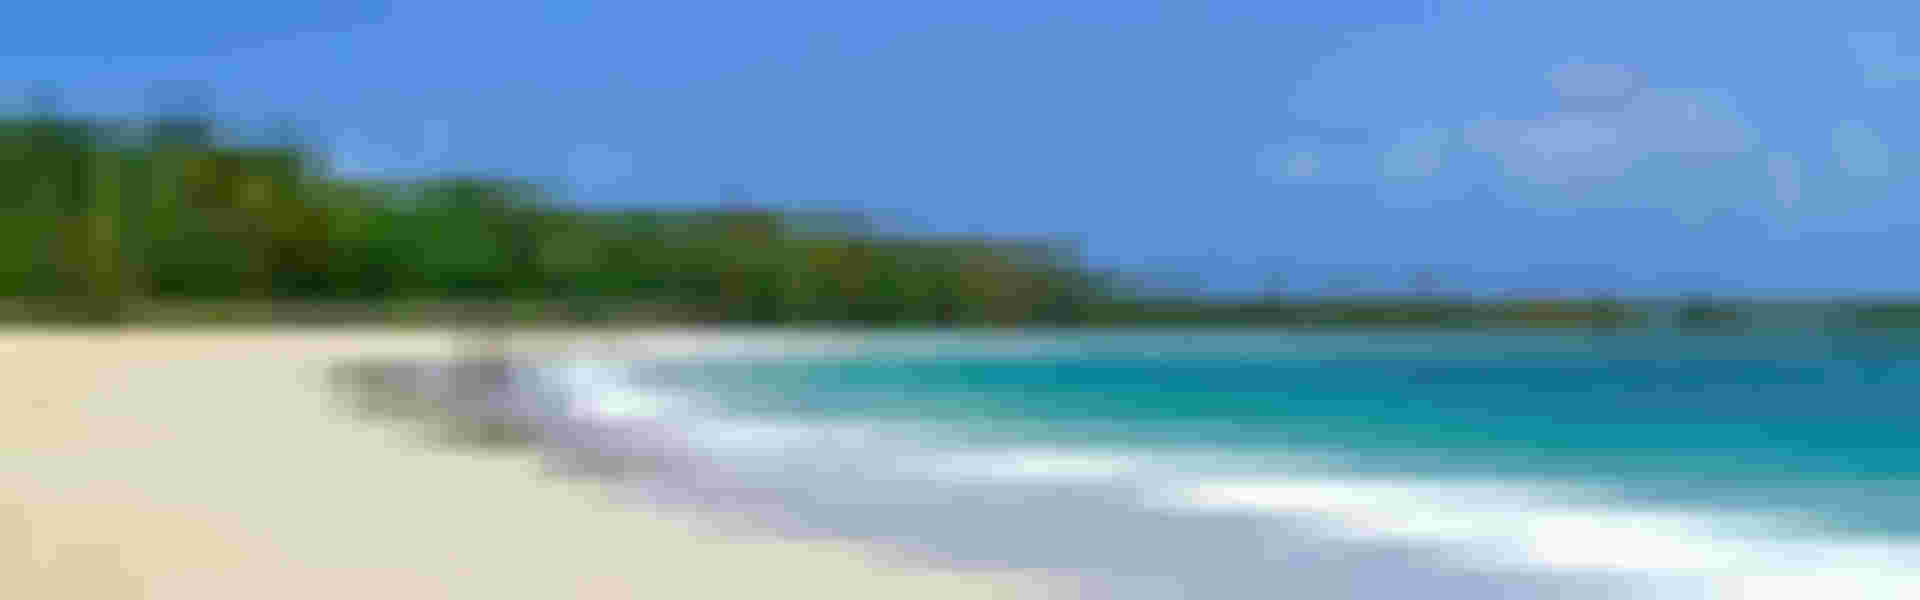 Ferienwohnung oder Ferienhaus in Bonaire mieten